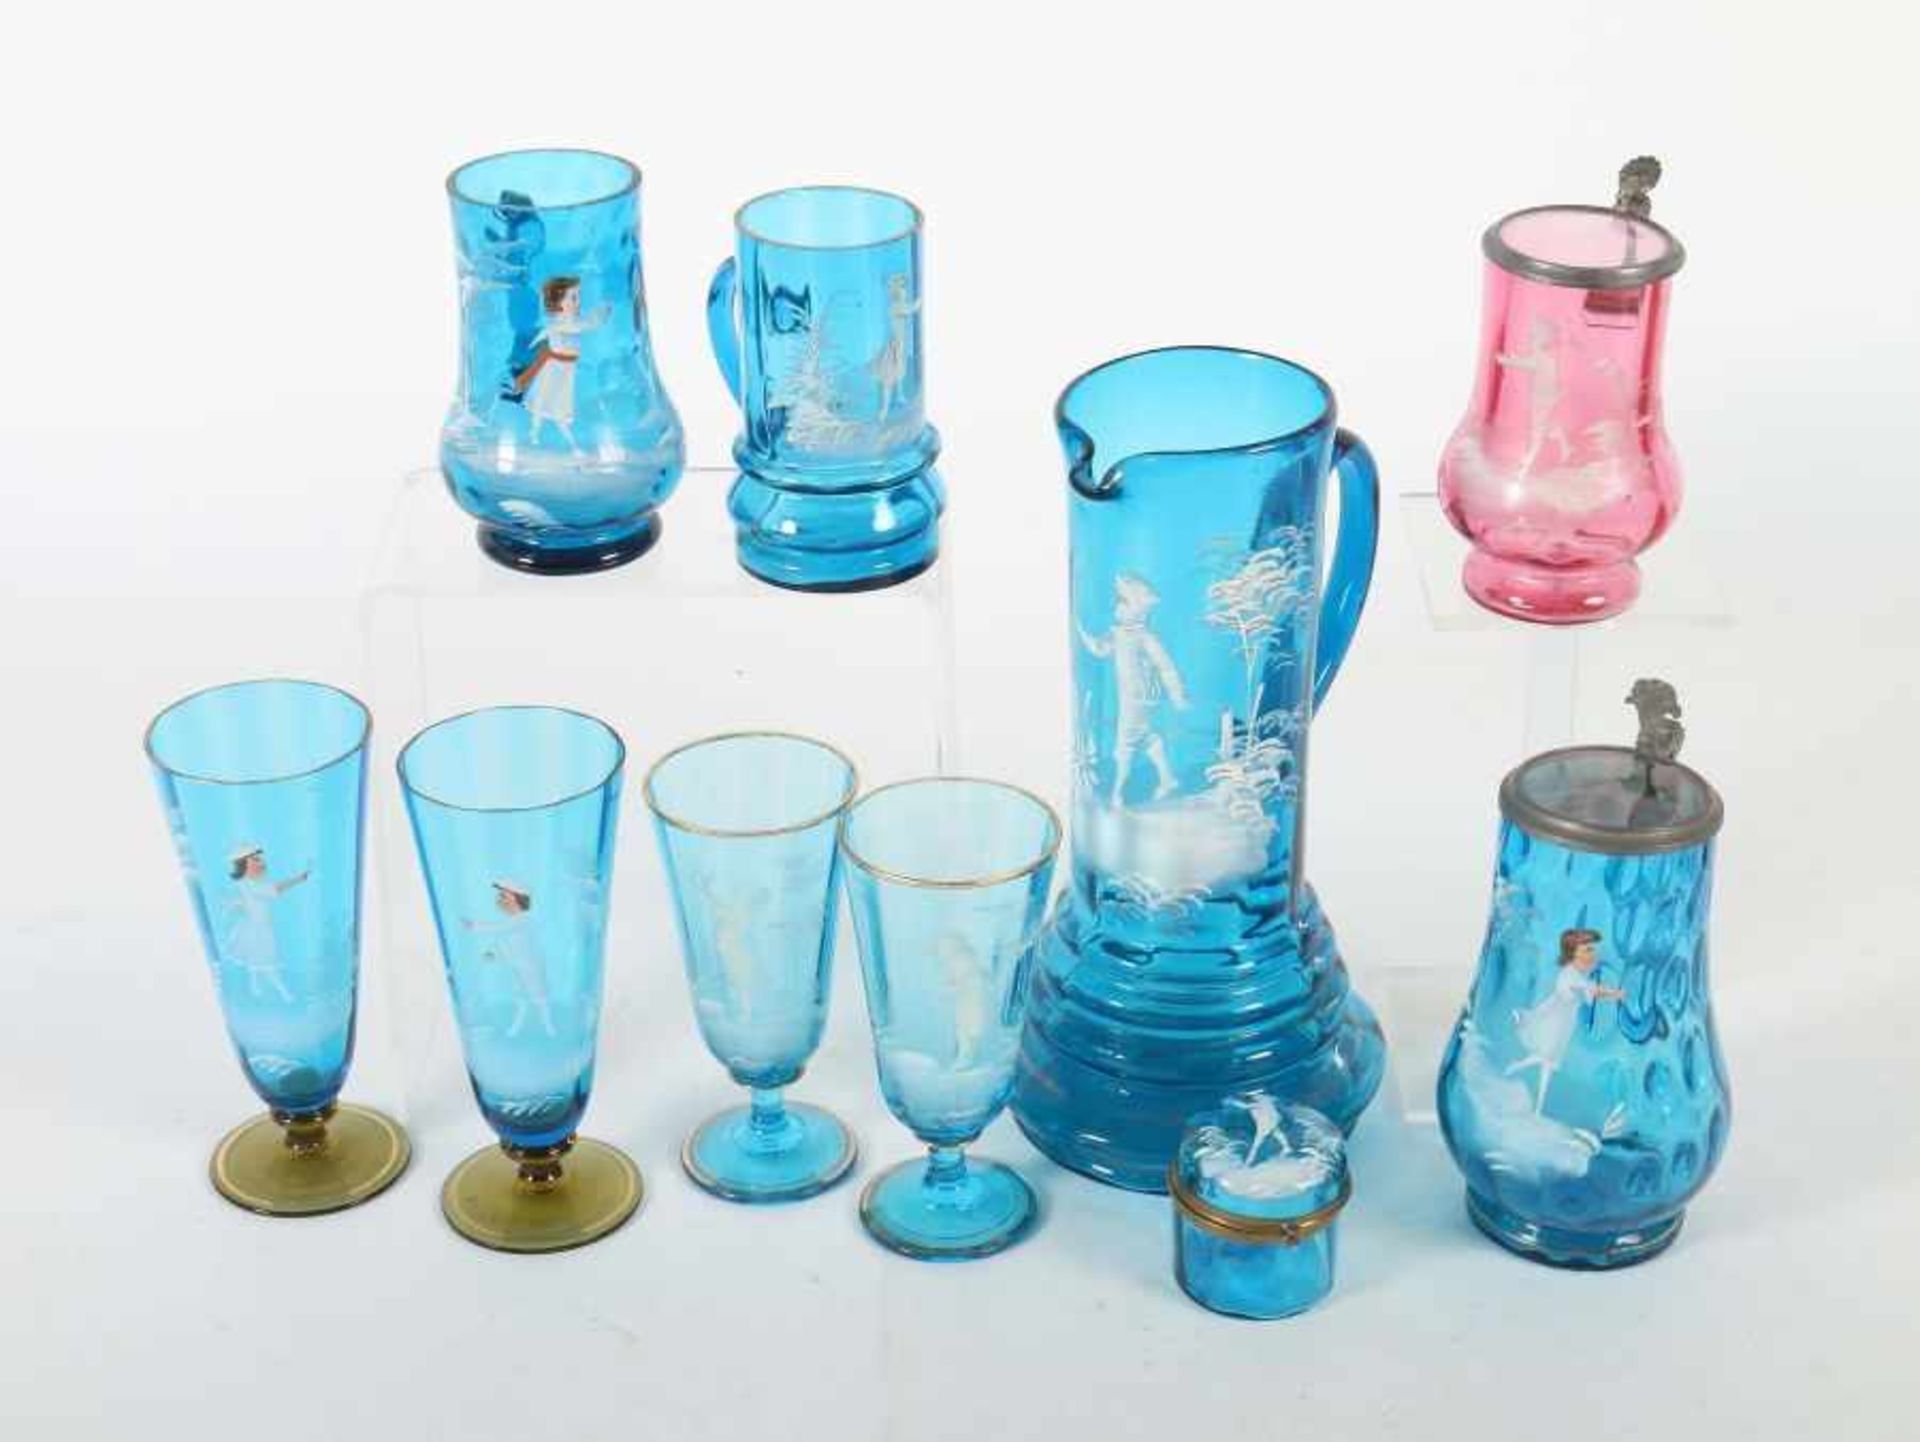 Konvolut Schneemalerei Deutschland, Anfang 20. Jh., blaues Glas, modellgeblasen, unterschiedliche - Bild 2 aus 2